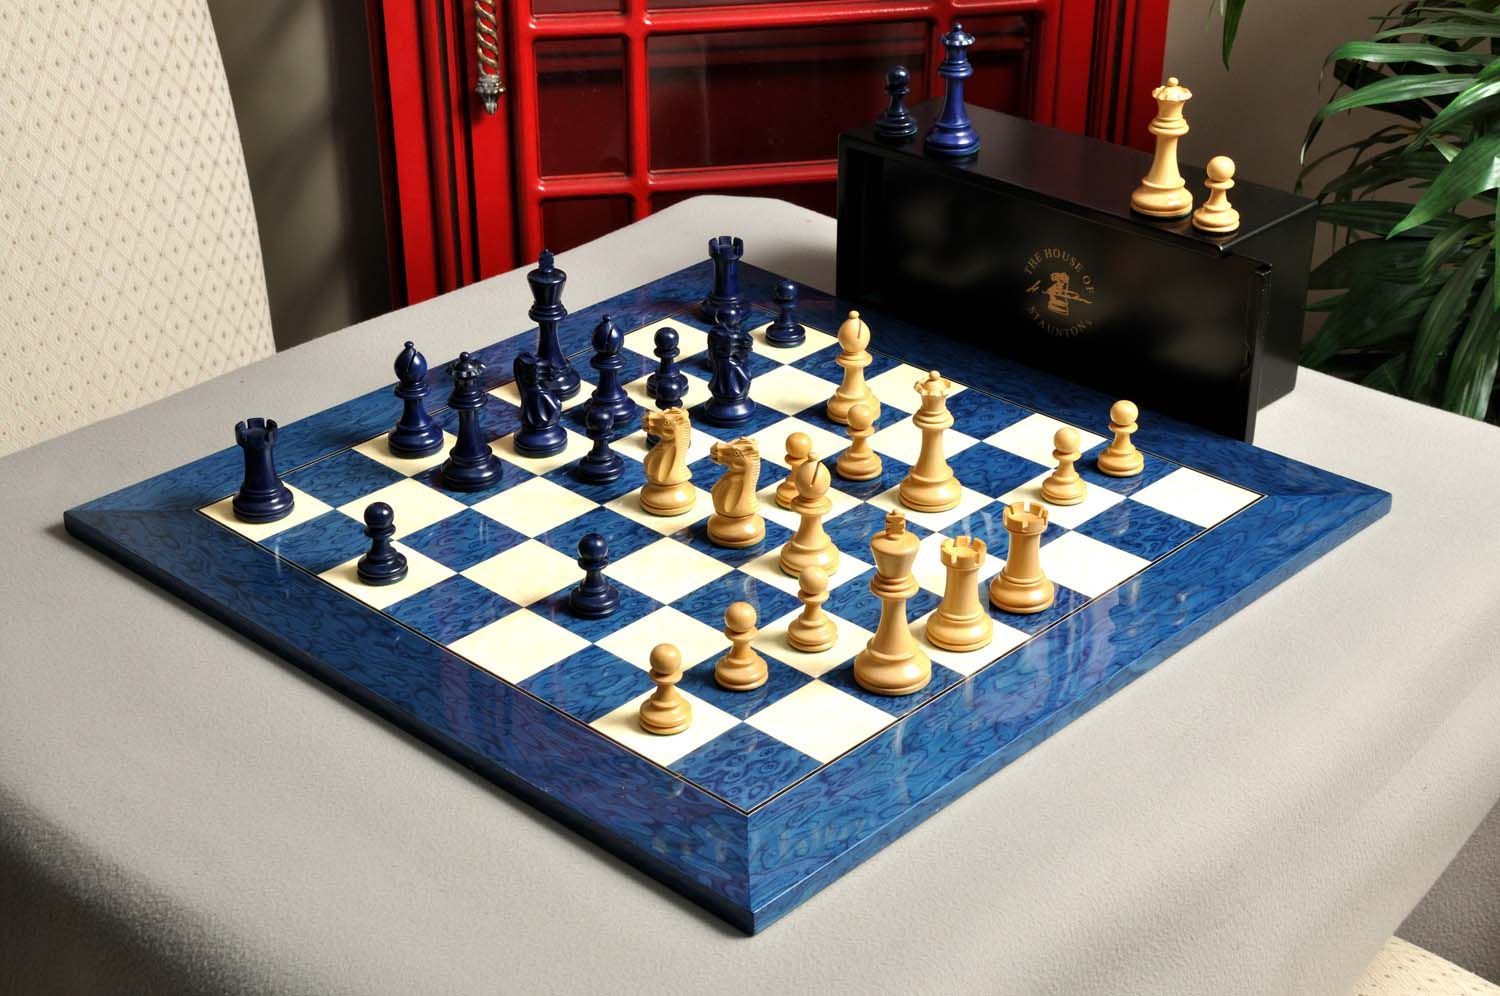 Master Mason Blue Lodge Chess Set - Hand Workmanship Patterns